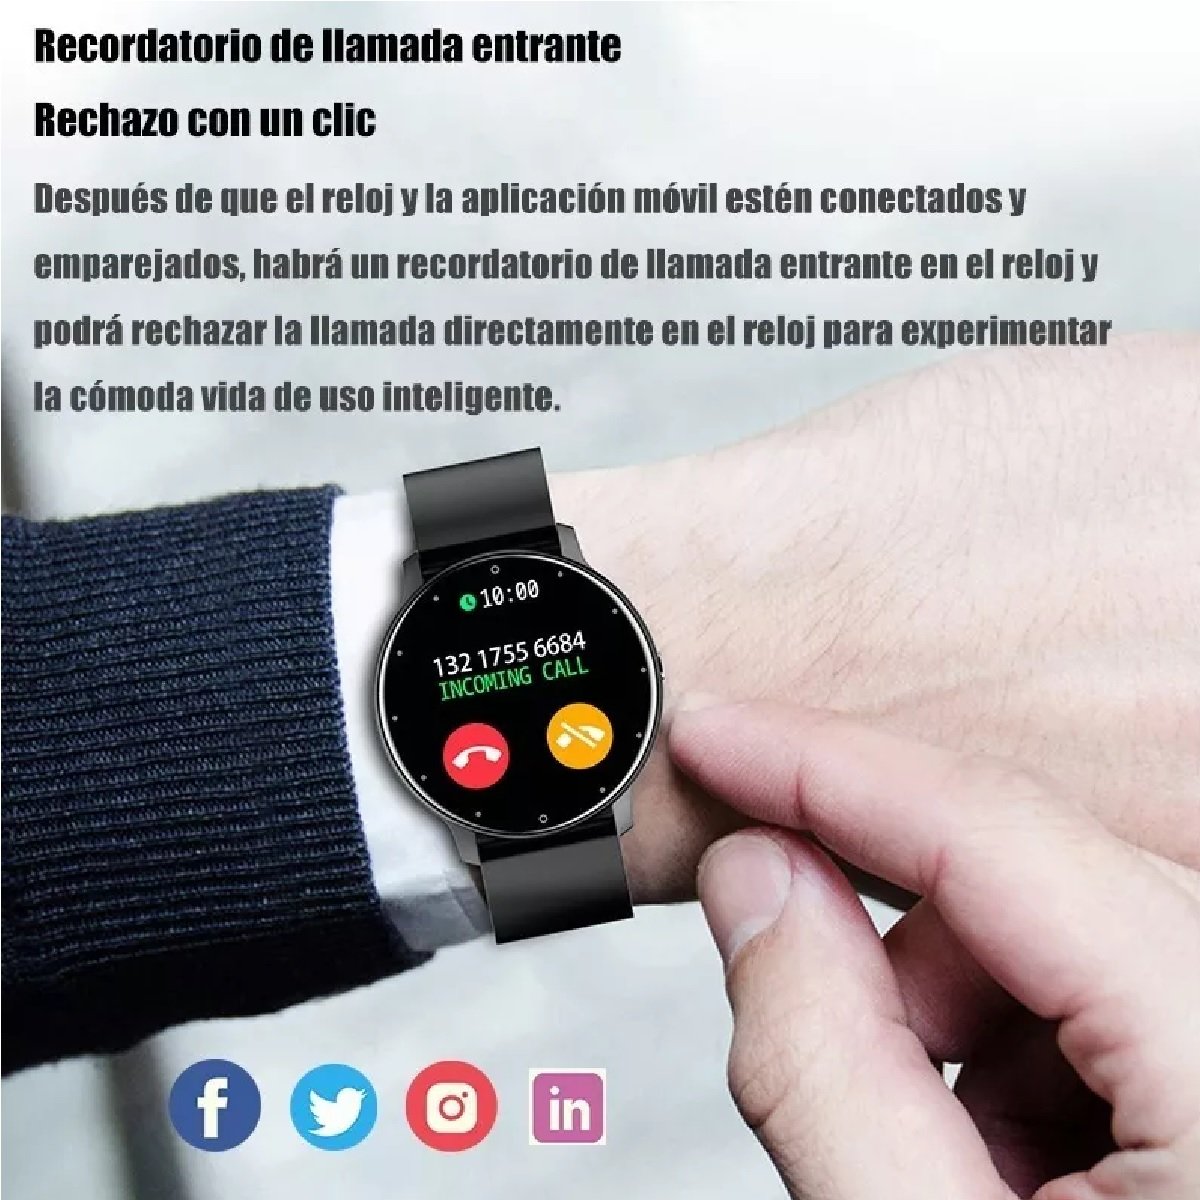 Samsung Galaxy Watch Active2 44mm BT Negro Reacondicionado(NO NUEVO) SAMSUNG